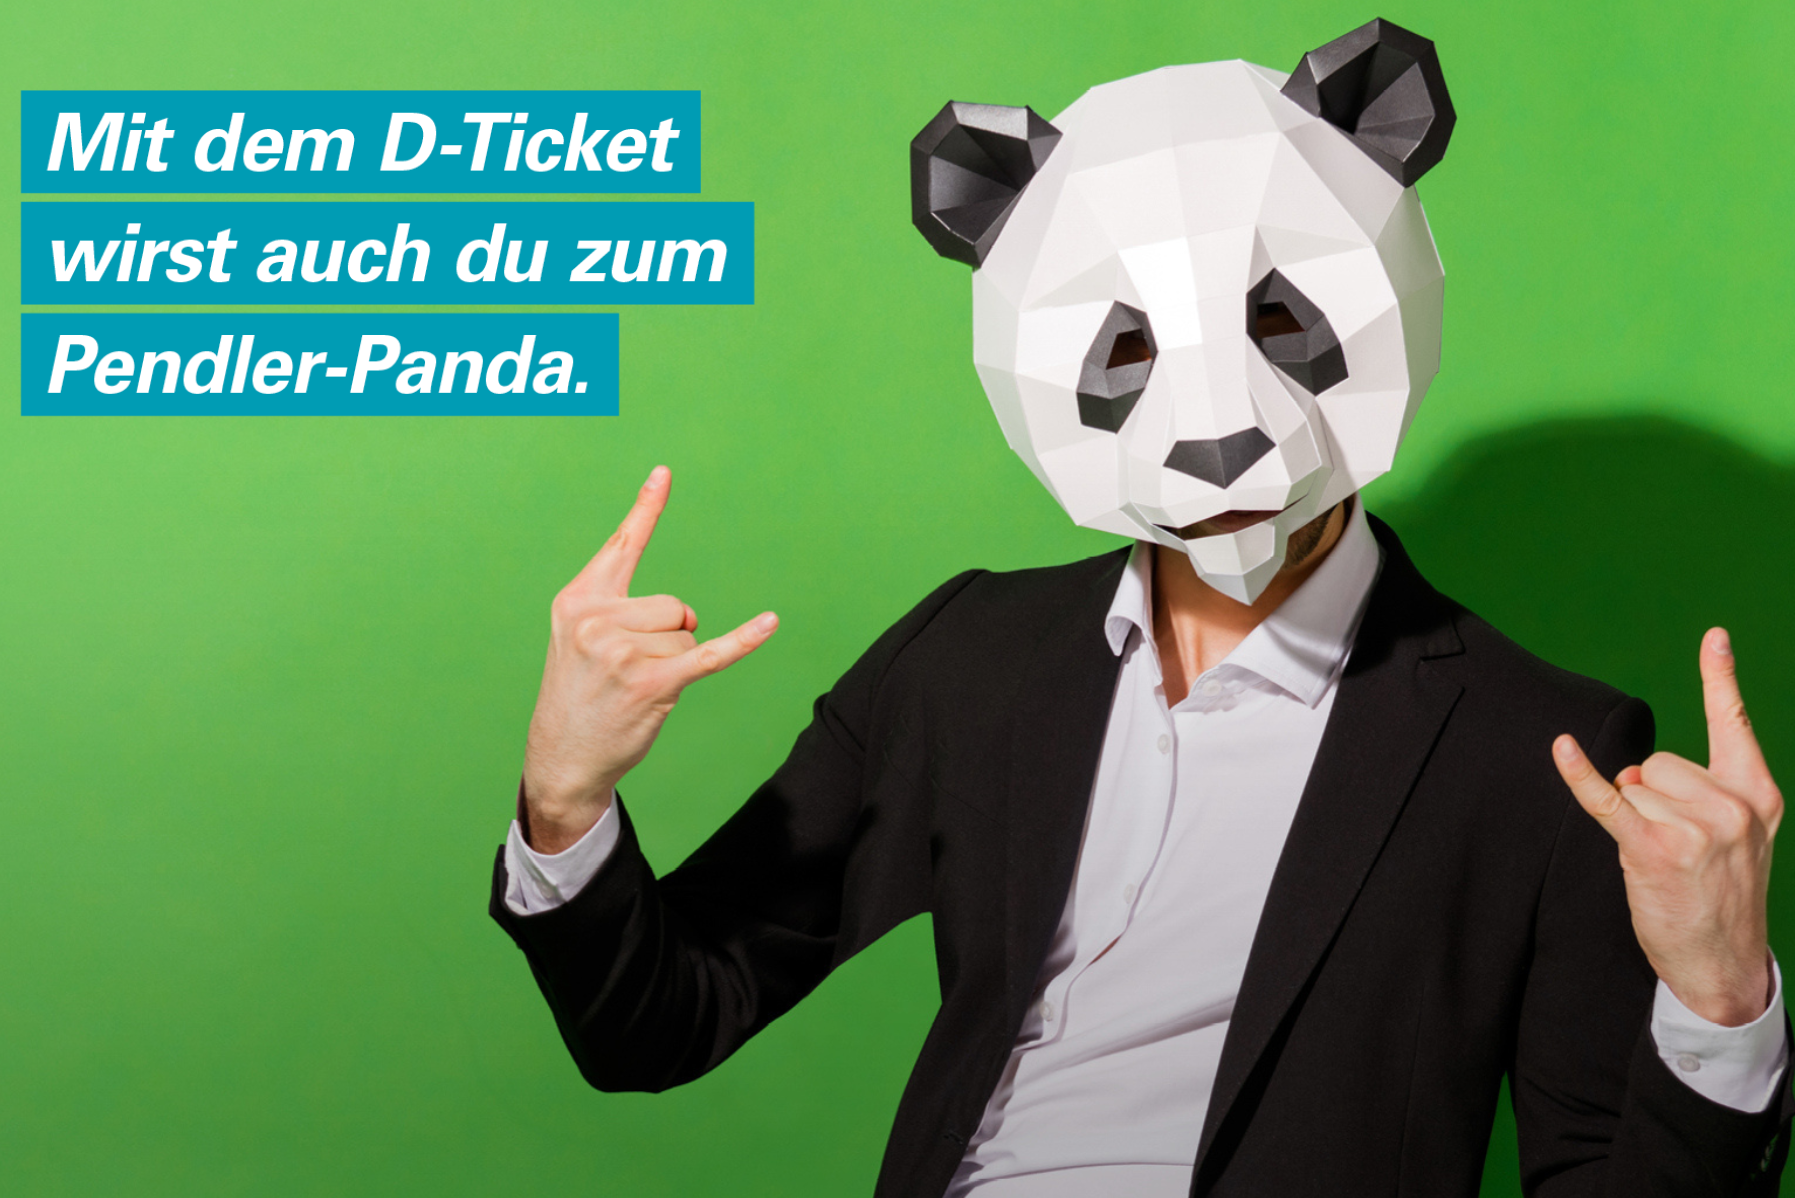 Mann mit Pandamaske wirbt für das Deutschlandticket